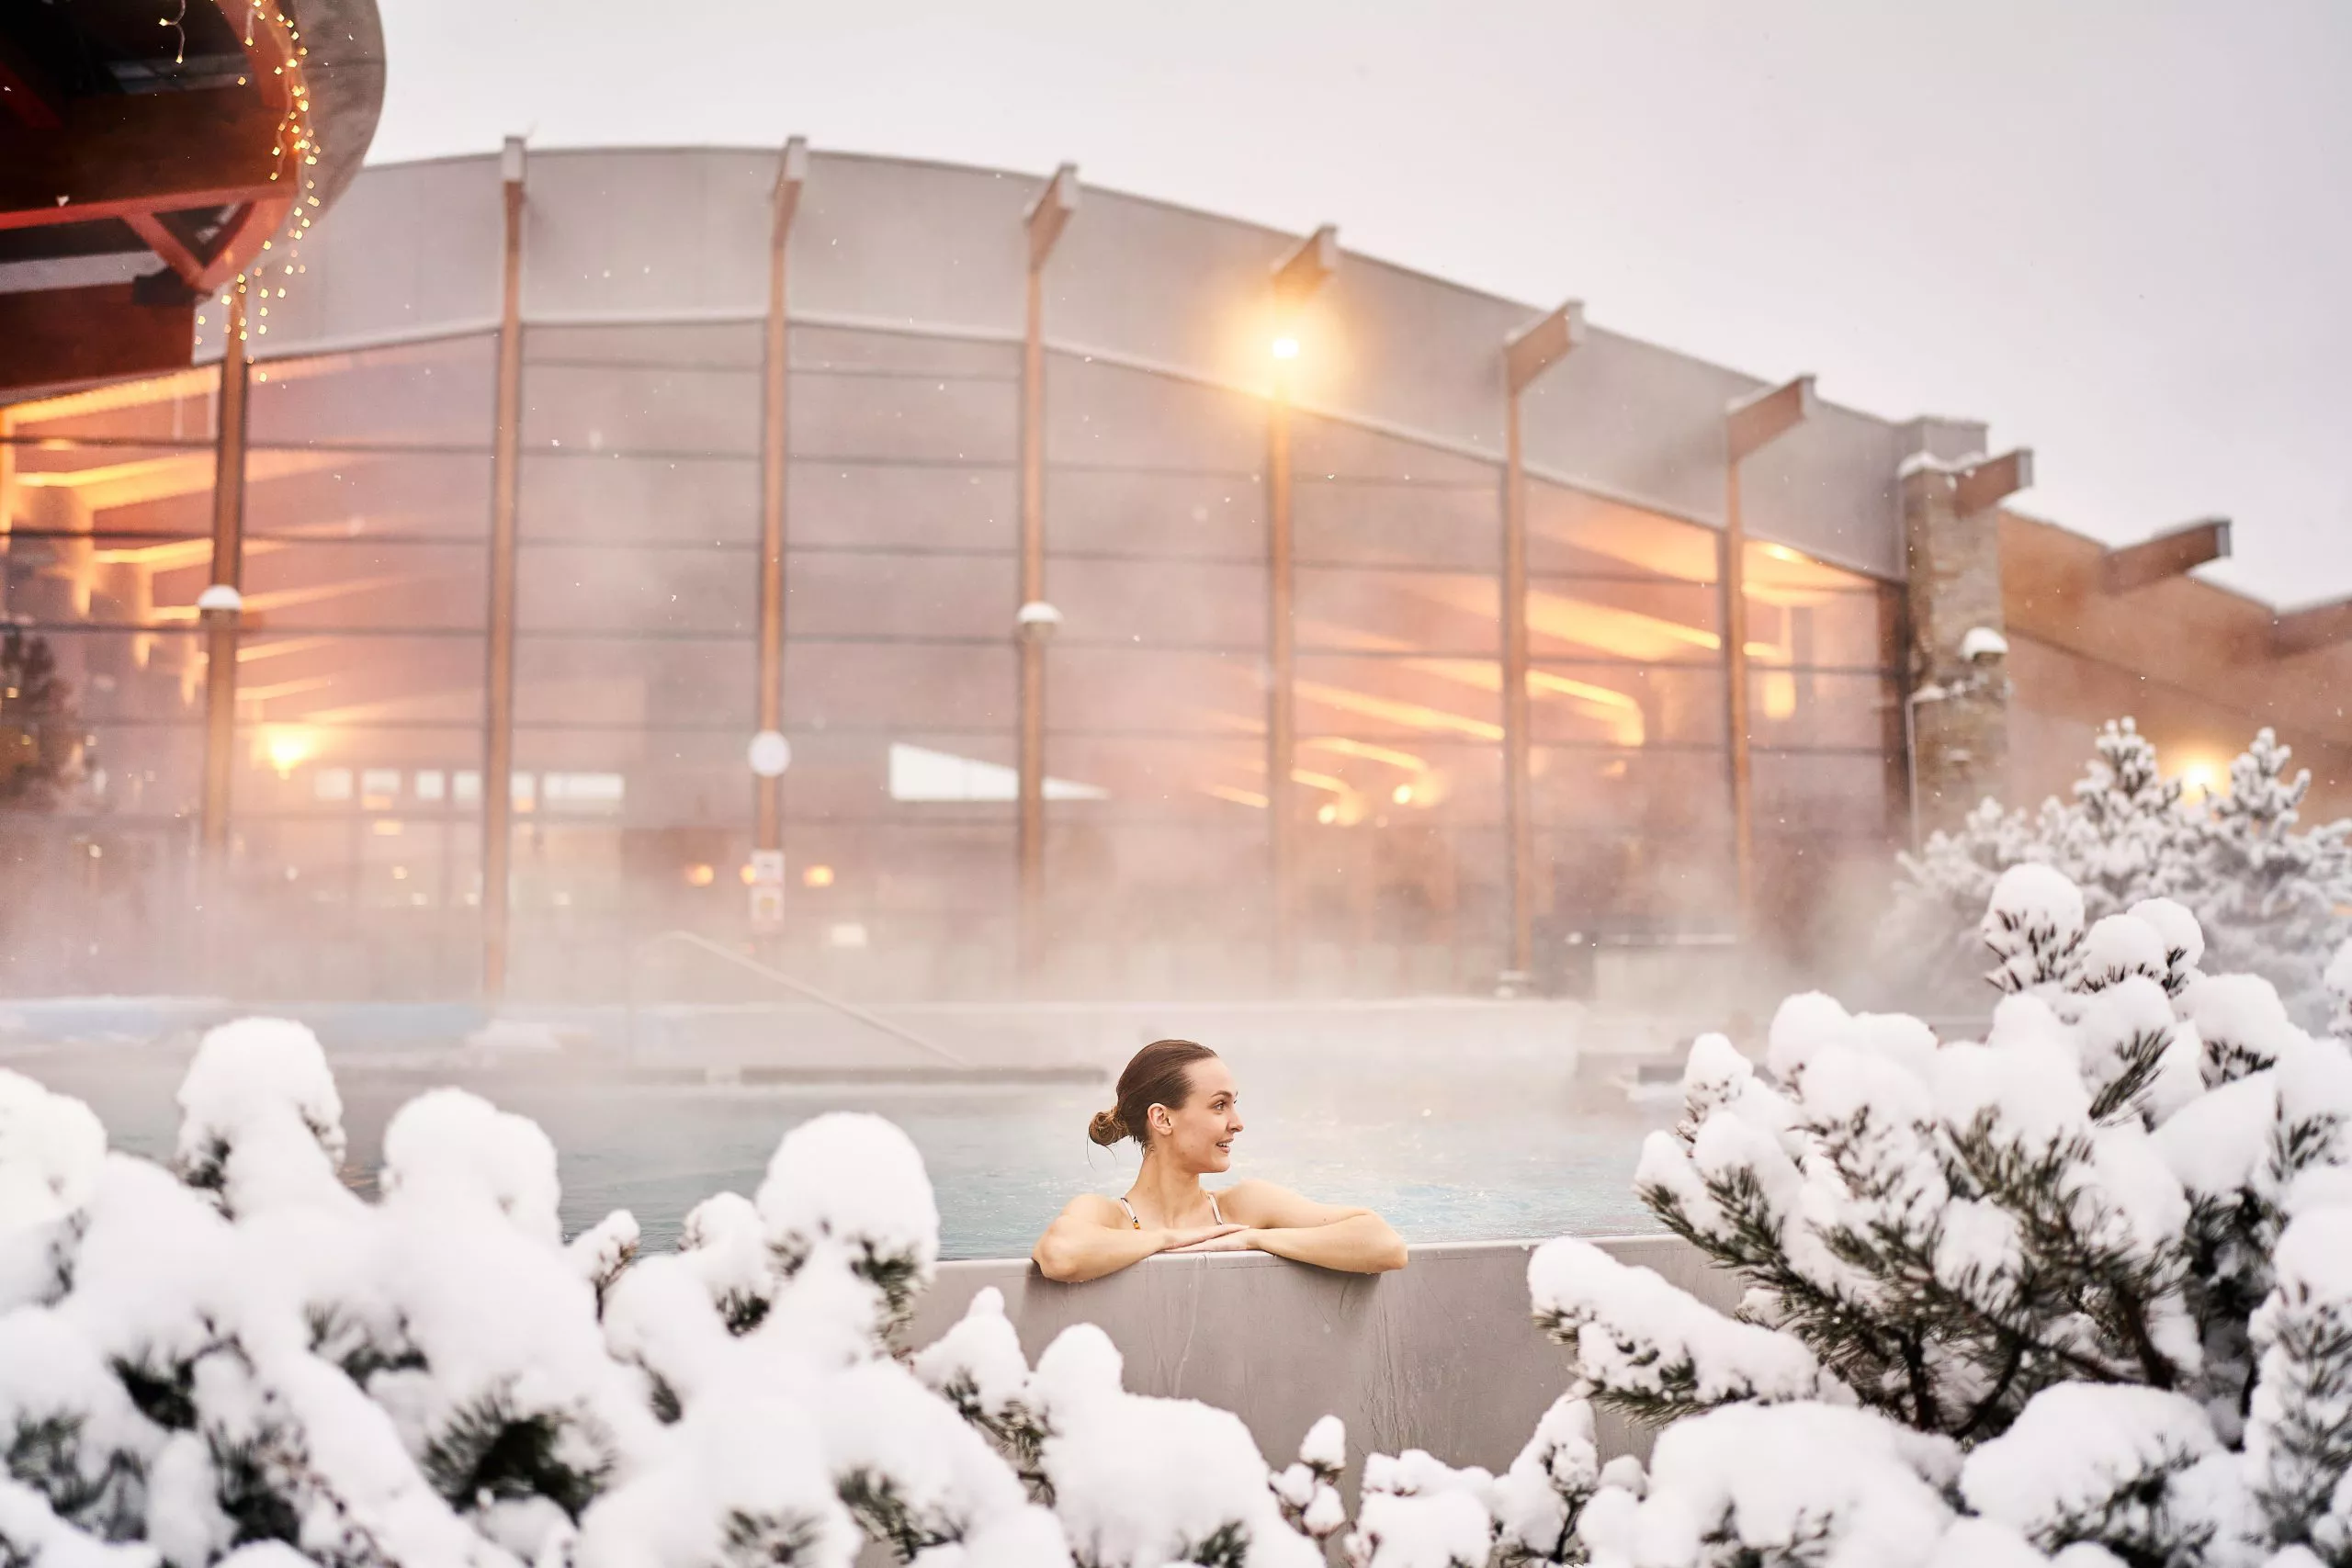 Blick auf eine junge Frau im Thermalbad, mitten verschneiter Bäume. Im Hintergrund ist das beleuchtete Gebäude des Thermalbads zu sehen. Aus dem Becken steigt heißer Dampf auf.